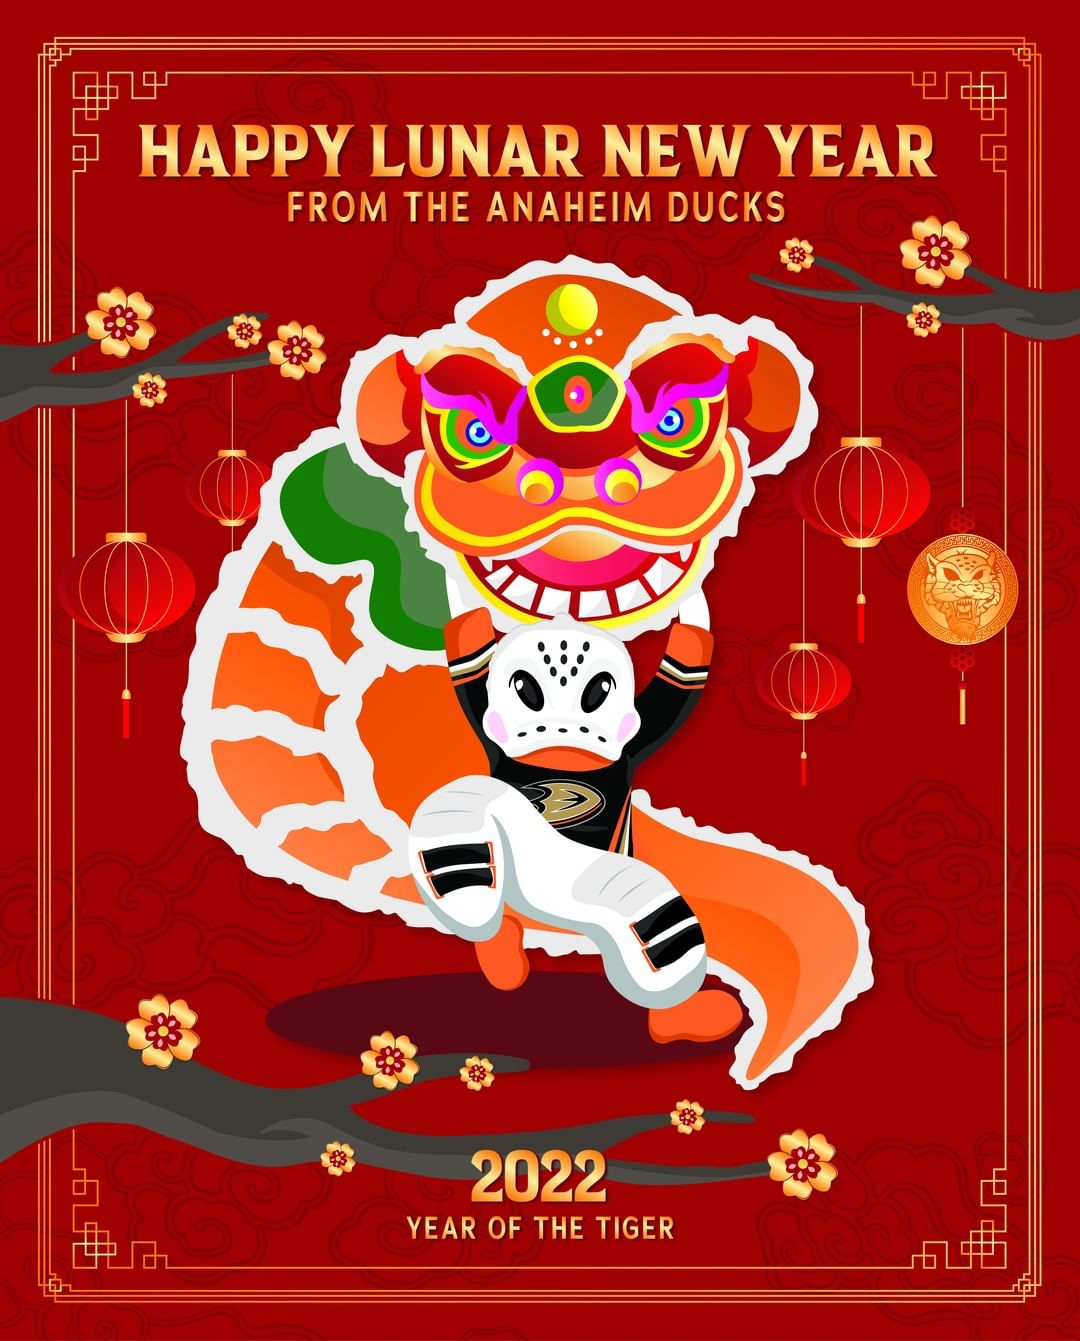 Happy Lunar New Year! #FlyTogether #LunarNewYear #YearOfTheTiger...